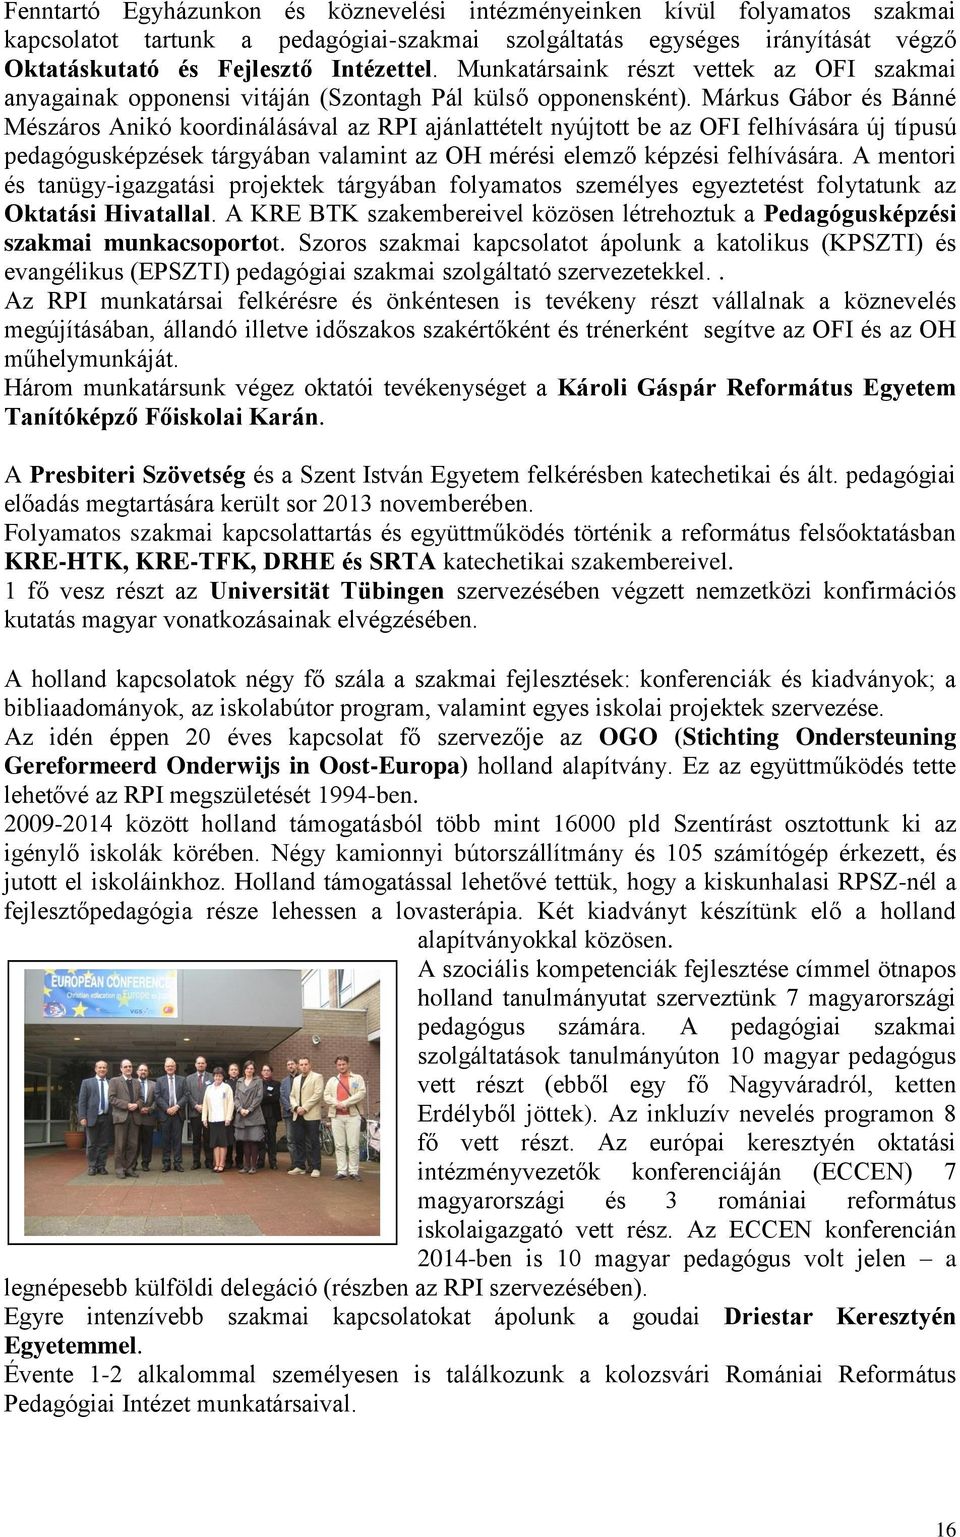 Márkus Gábor és Bánné Mészáros Anikó koordinálásával az RPI ajánlattételt nyújtott be az OFI felhívására új típusú pedagógusképzések tárgyában valamint az OH mérési elemző képzési felhívására.